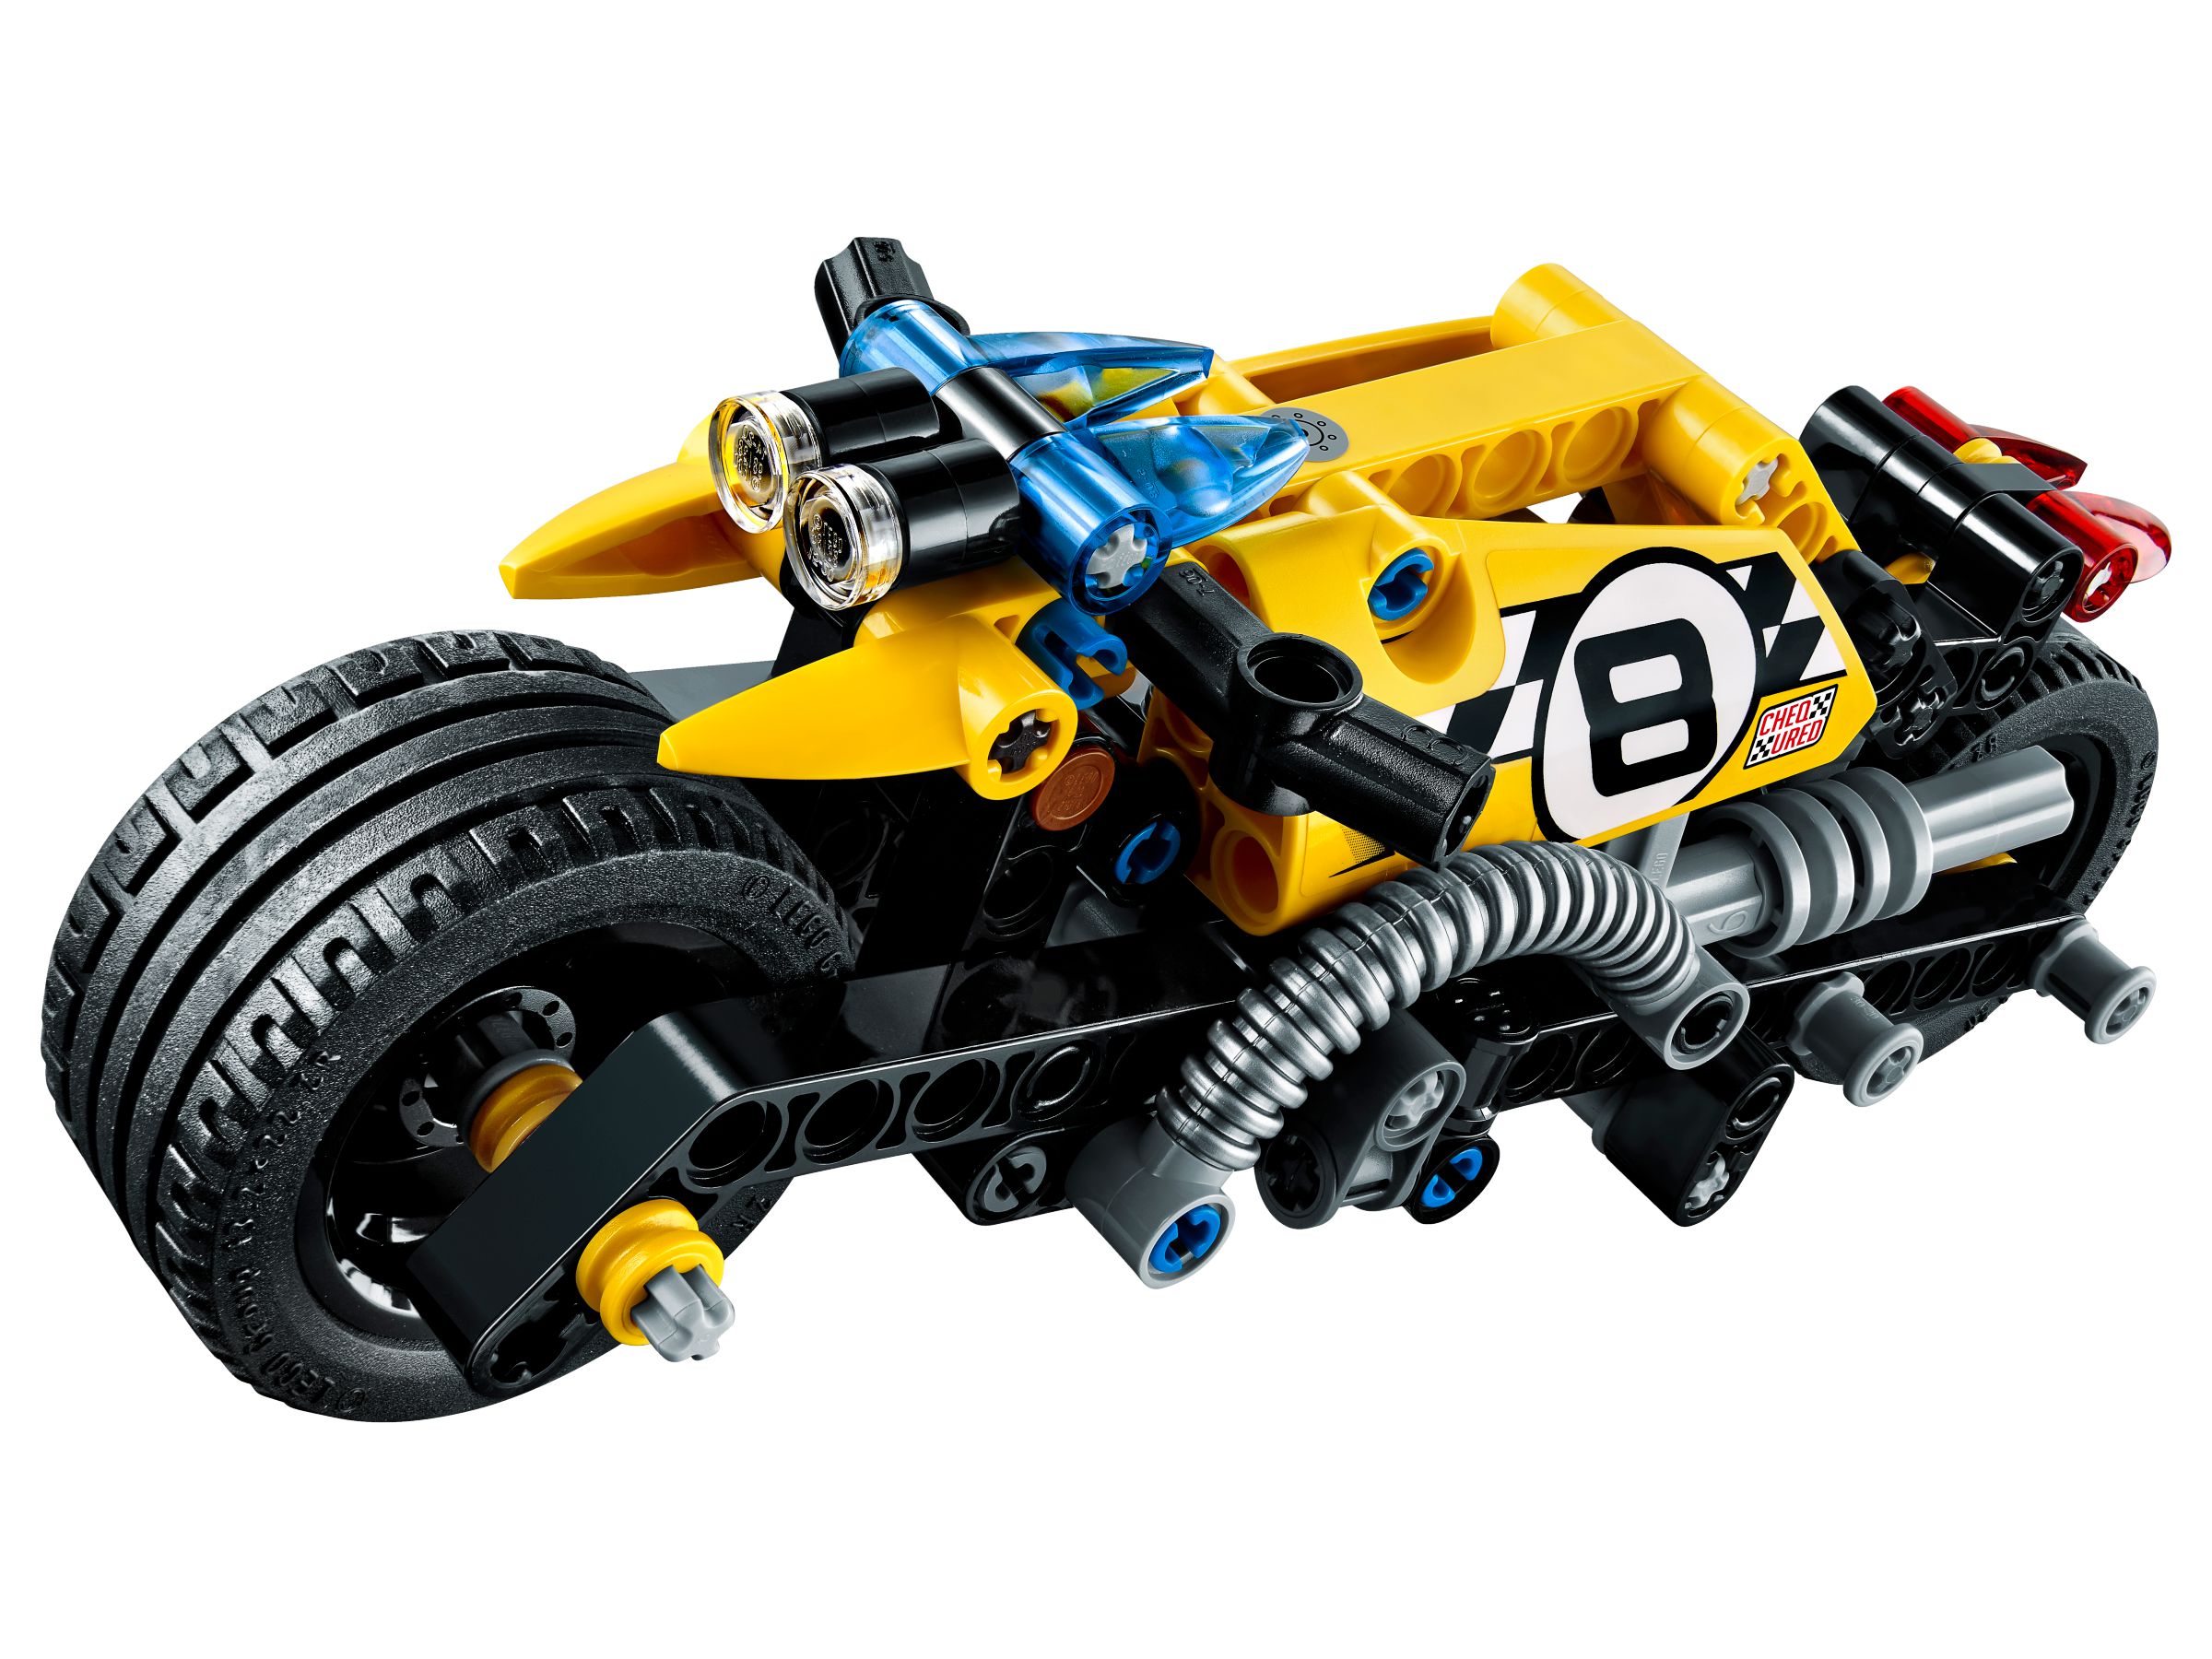 LEGO Technic 42058 Stunt-Motorrad LEGO_42058_alt2.jpg